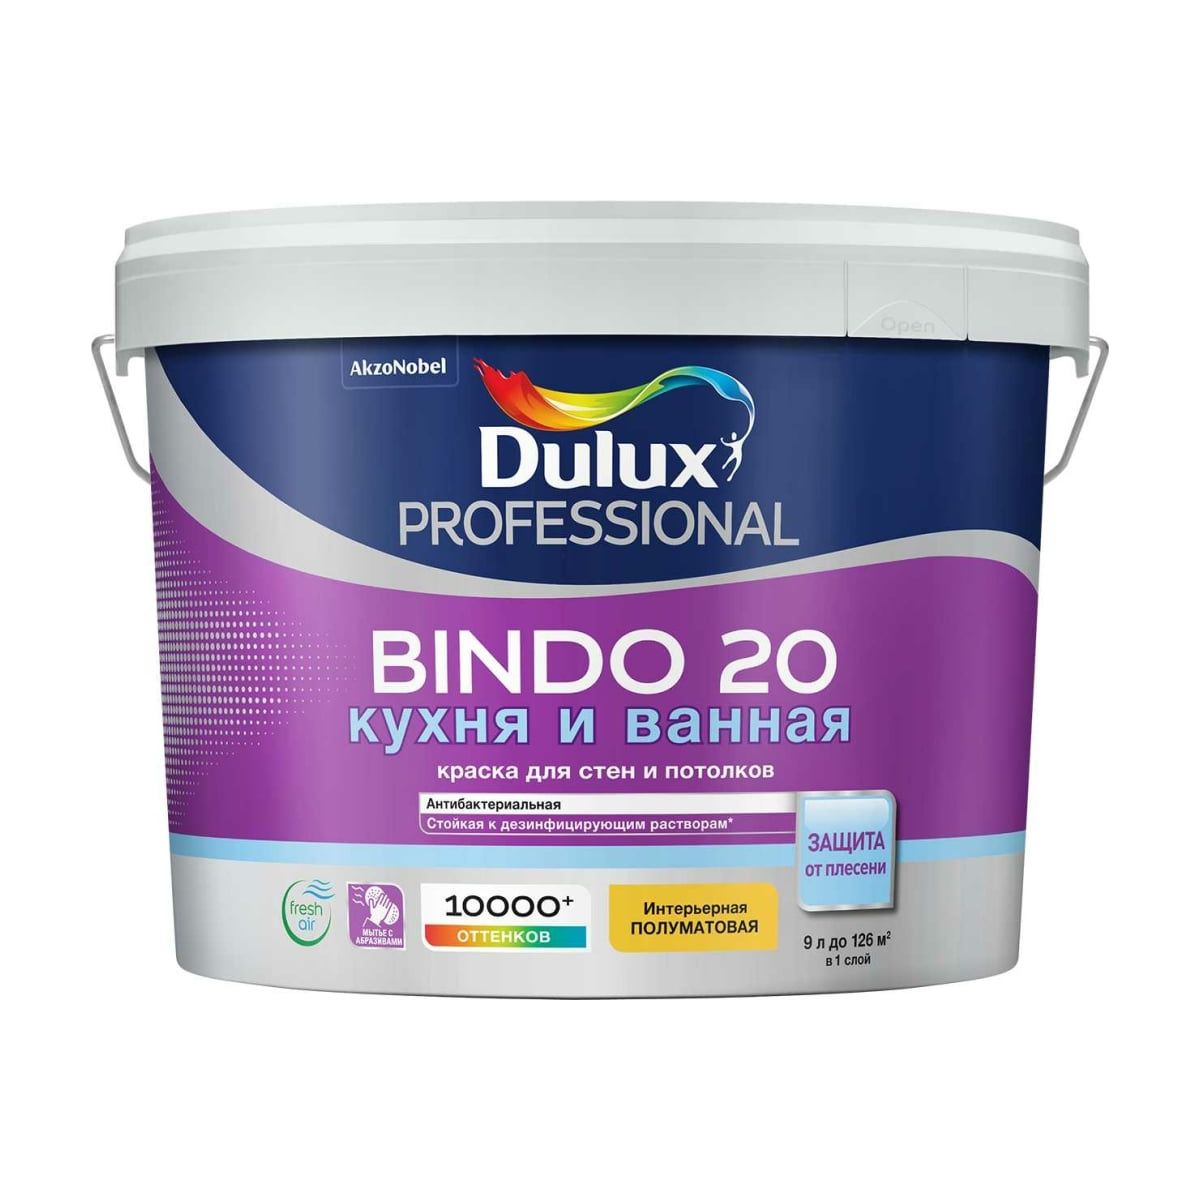 Краска Dulux Professional Bindo для кухни и ванной латексная 20 полуматовая база BC 9 л конструктор военная база 1460 деталей тм архитектурное моделирование